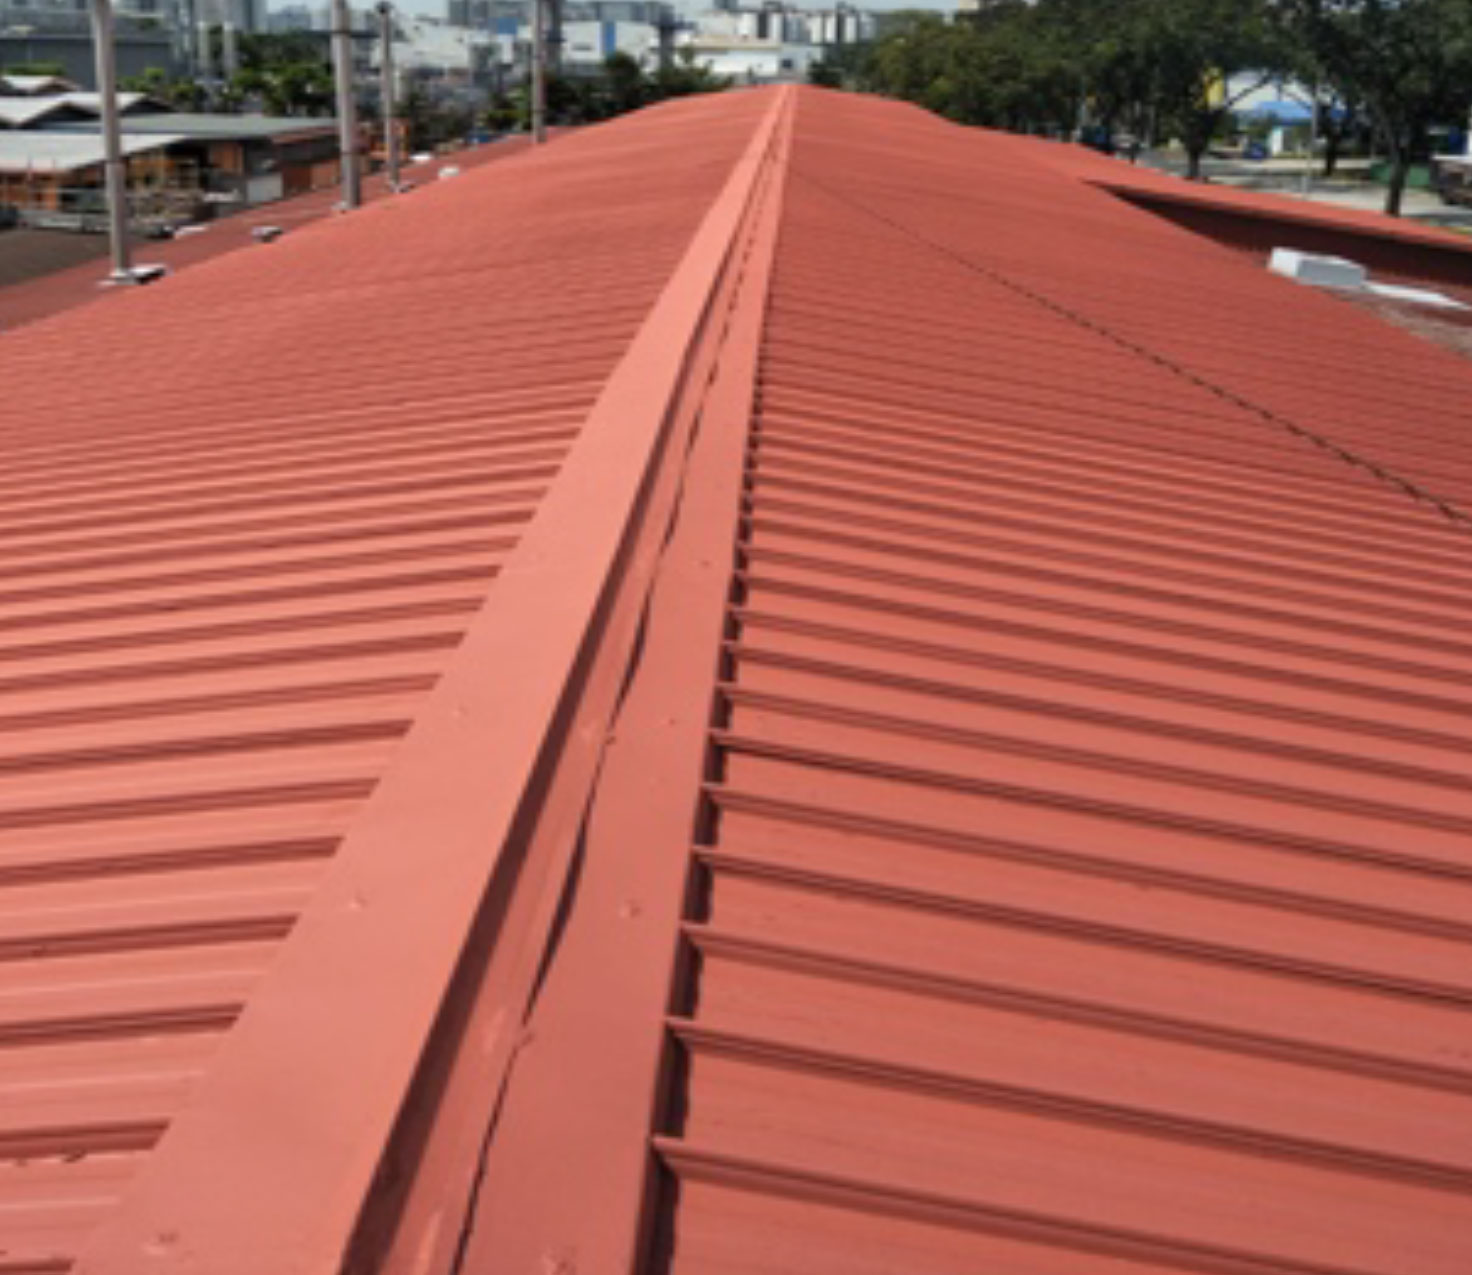 Tile Roof Waterproofing by Allstar Waterproofing & Services